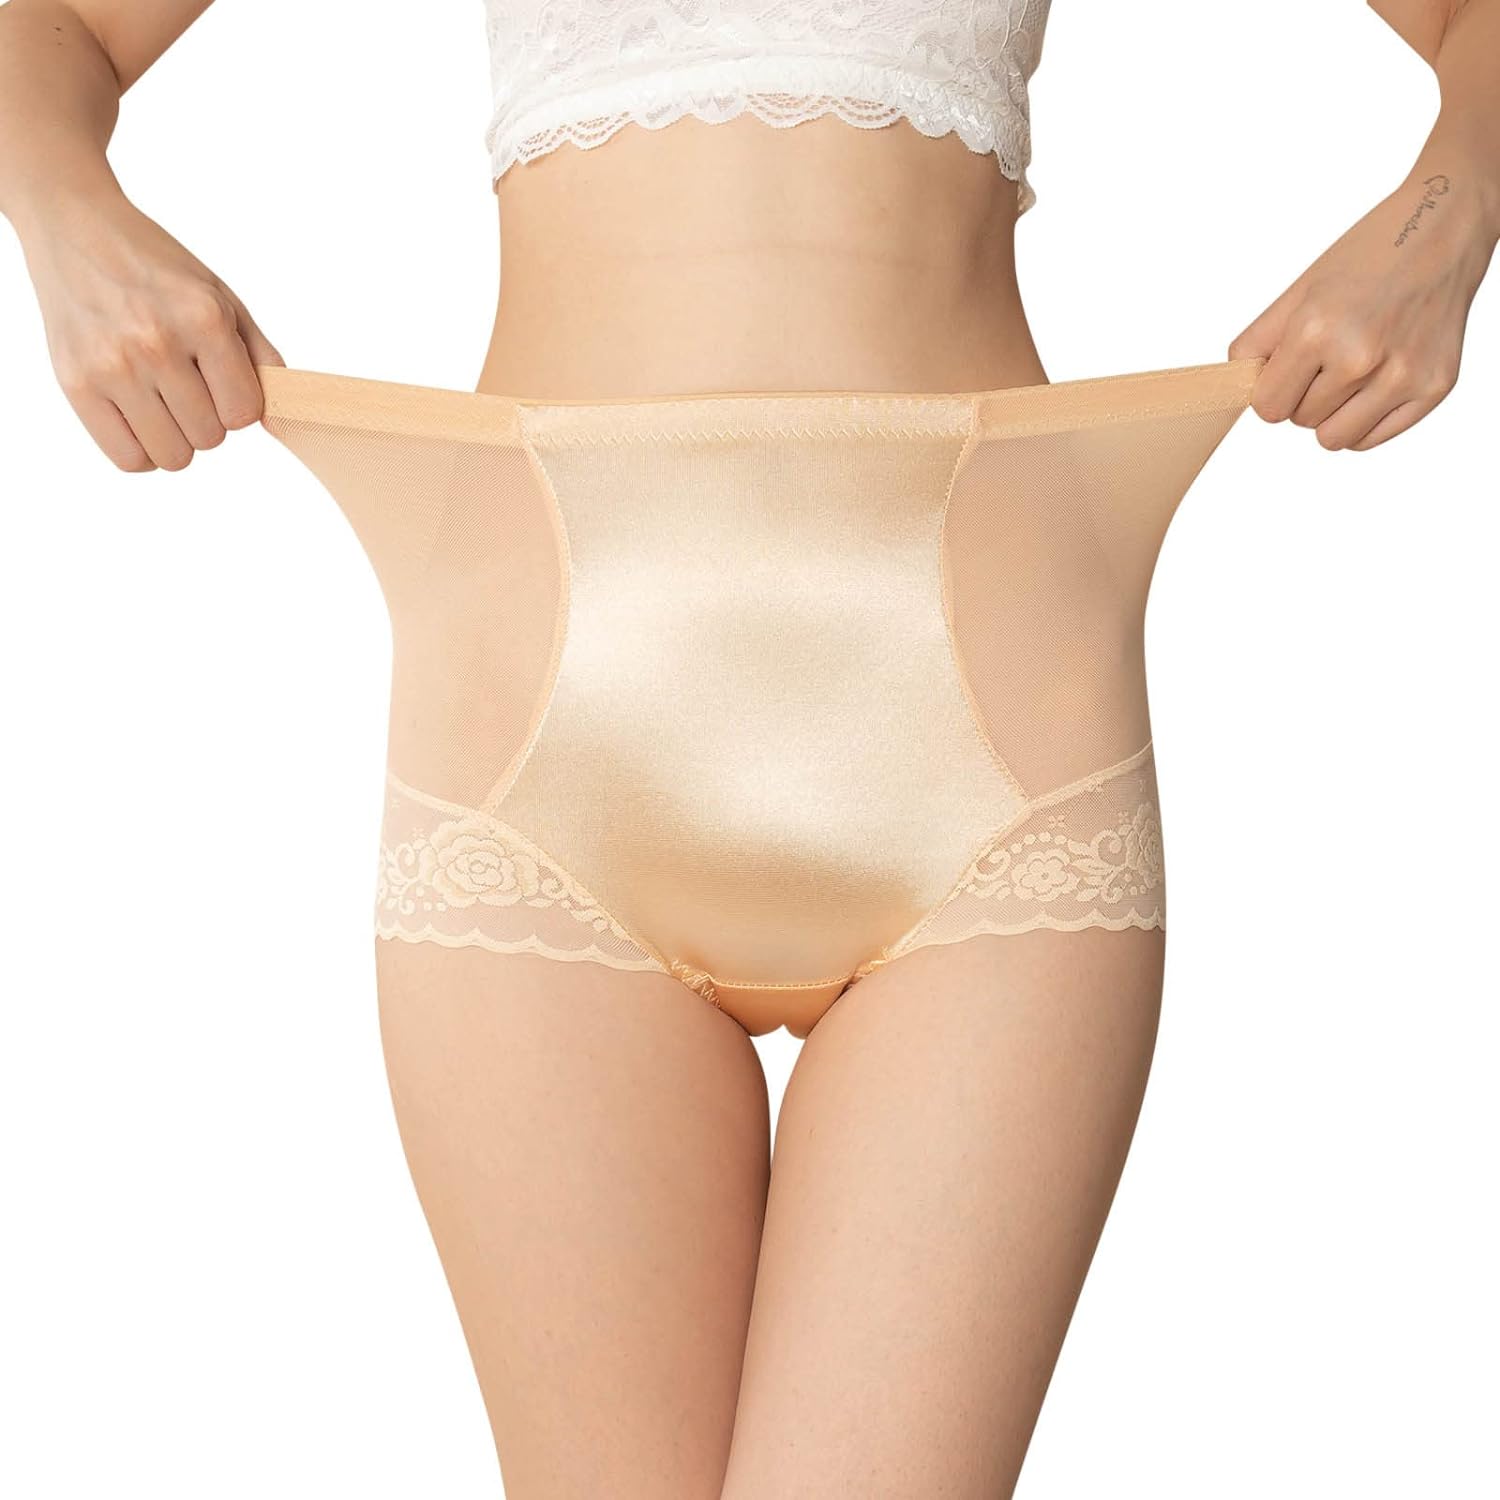 asli akar recommends women in sheer panties pic